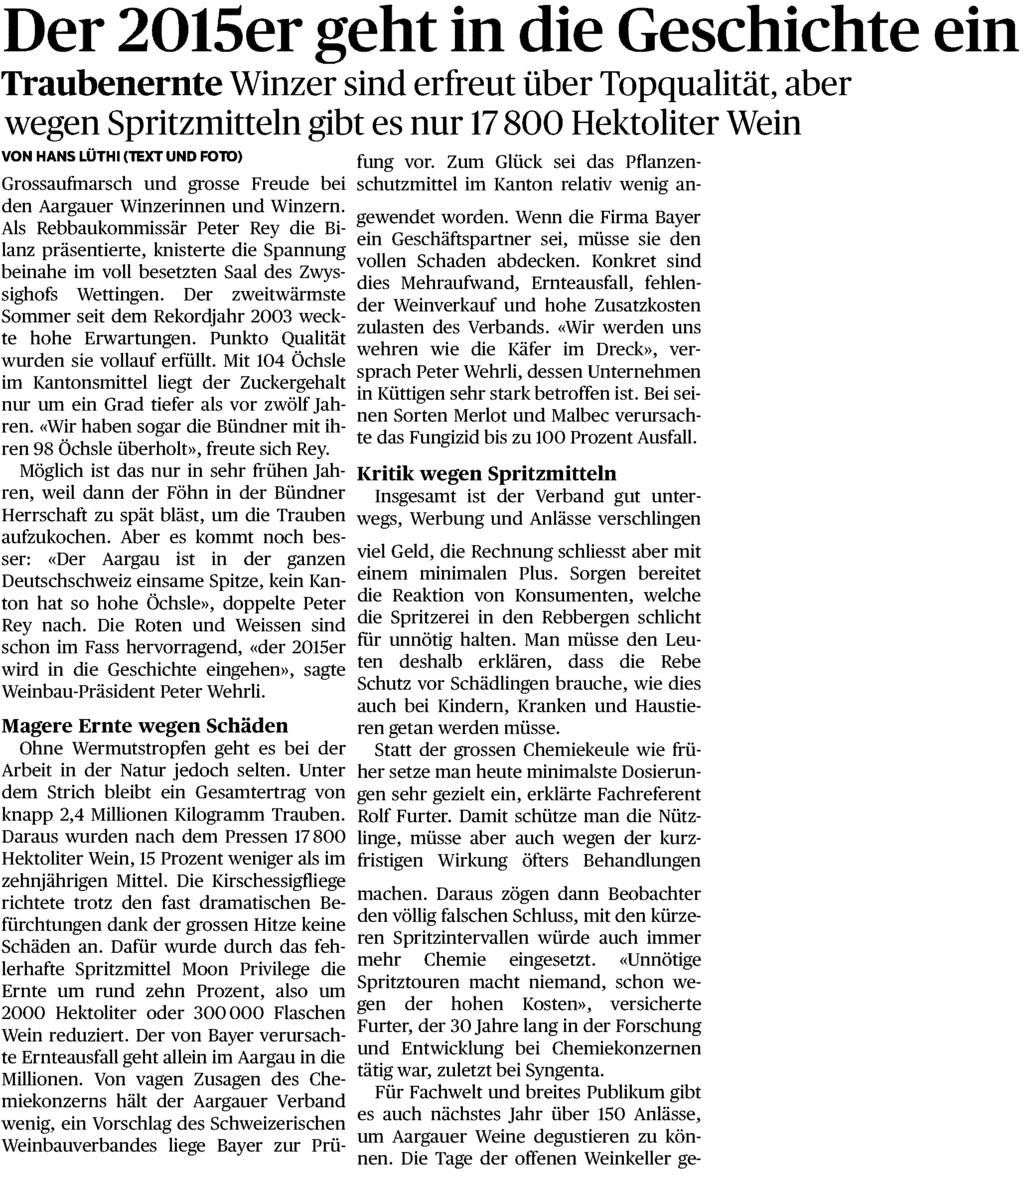 Aargauer Zeitung 5610 Wohlen 058/ 200 53 33 www.aargauerzeitung.